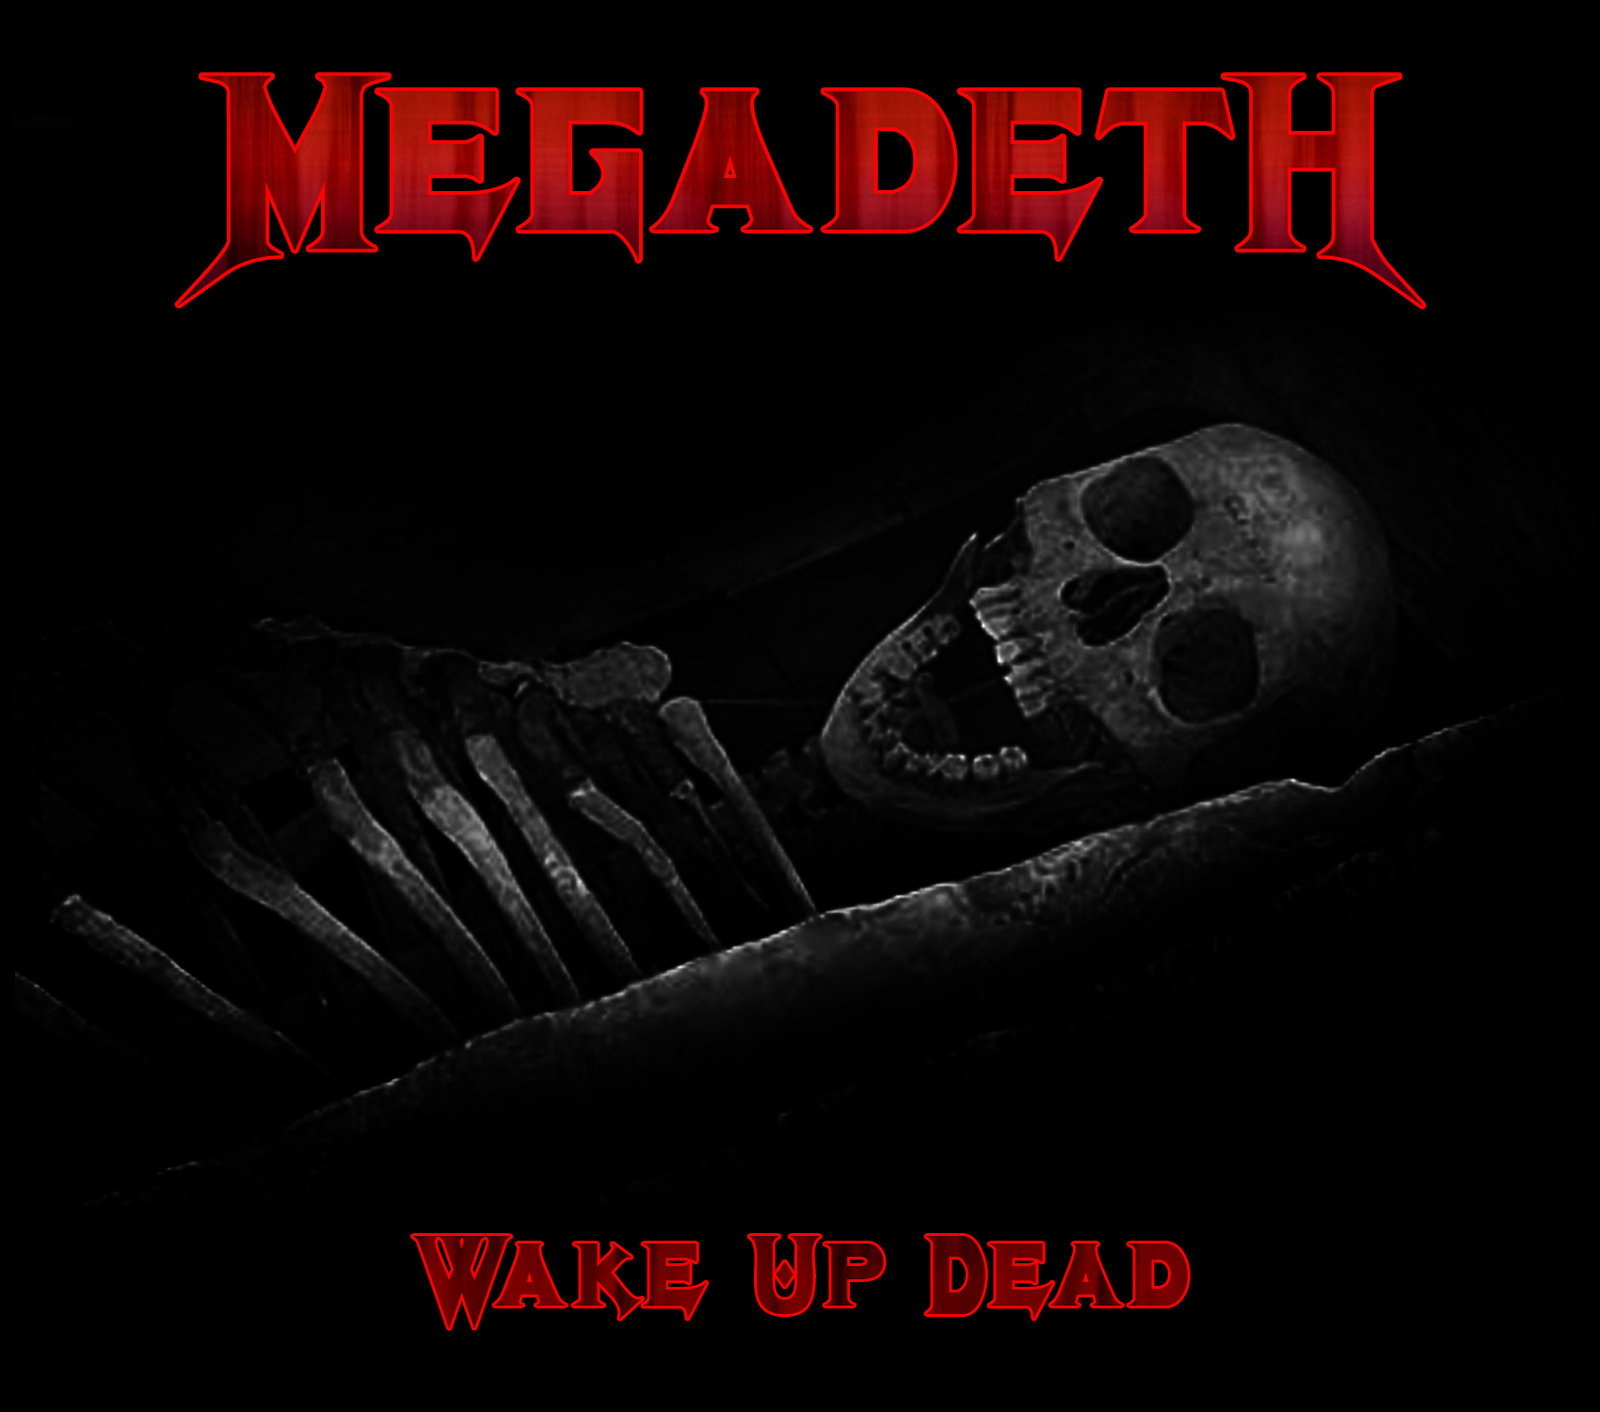 custom_album_cover__megadeth___wake_up_dead_by_rubenick-d5i3wod.jpg